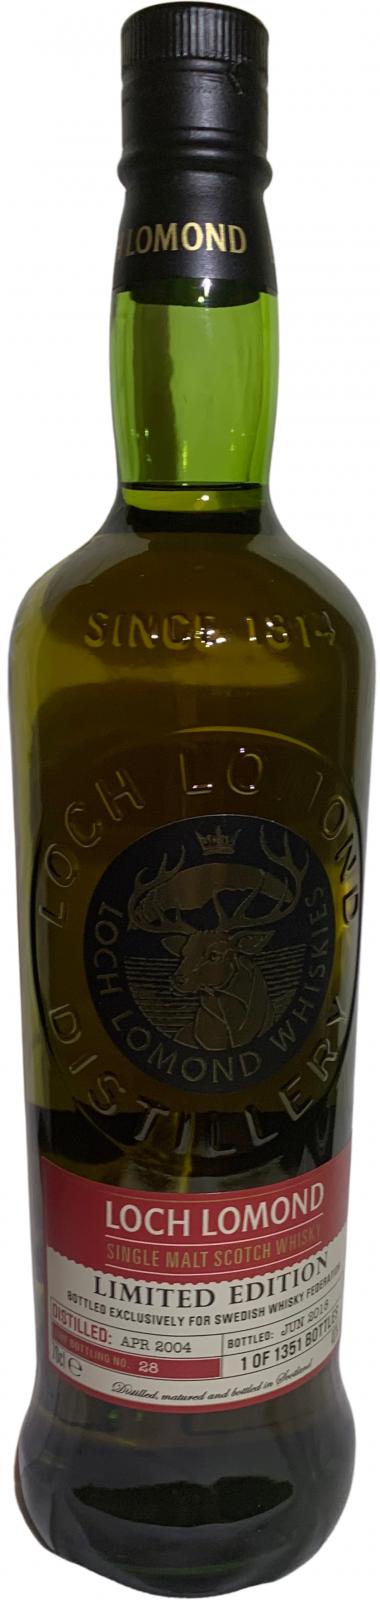 Loch Lomond 2004 28 Swedish whisky Federation 46% 700ml